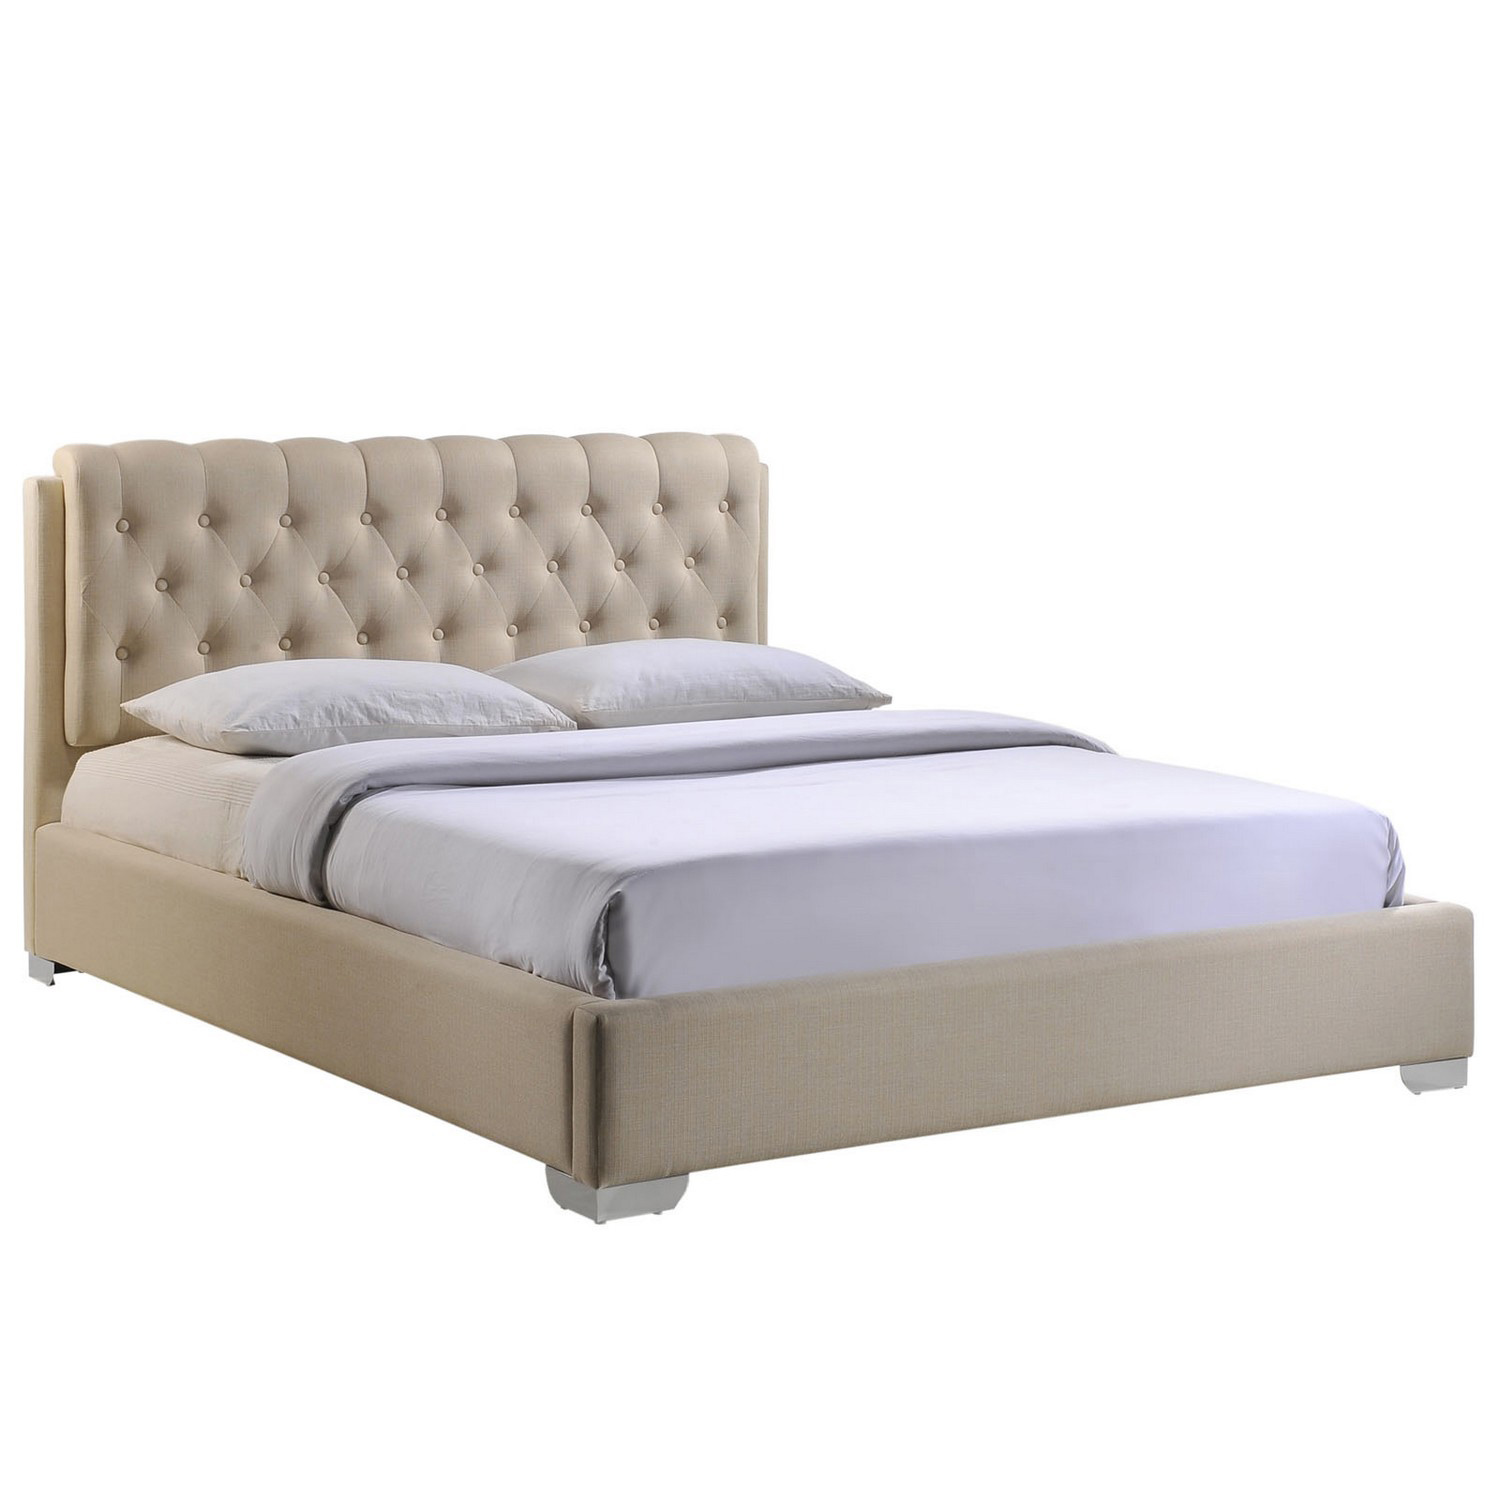 Modway Amelia Queen Fabric Bed - Beige